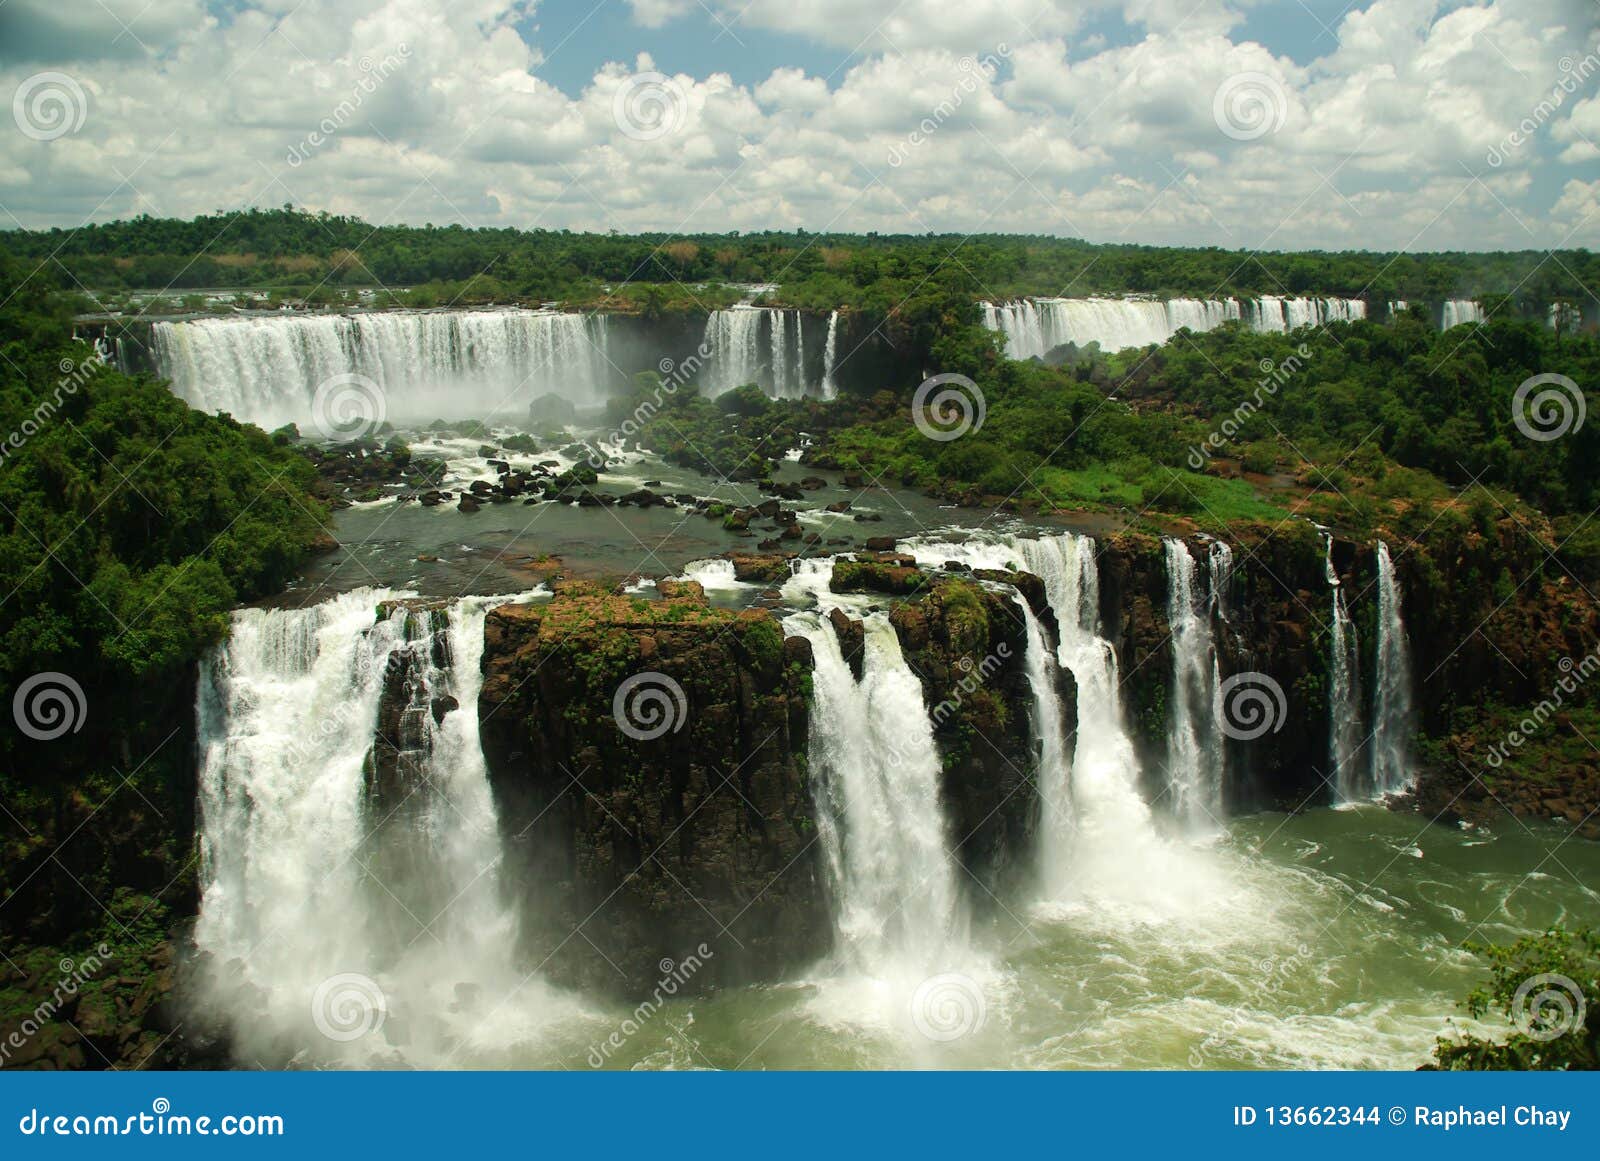 iguazu falls seen from brazil